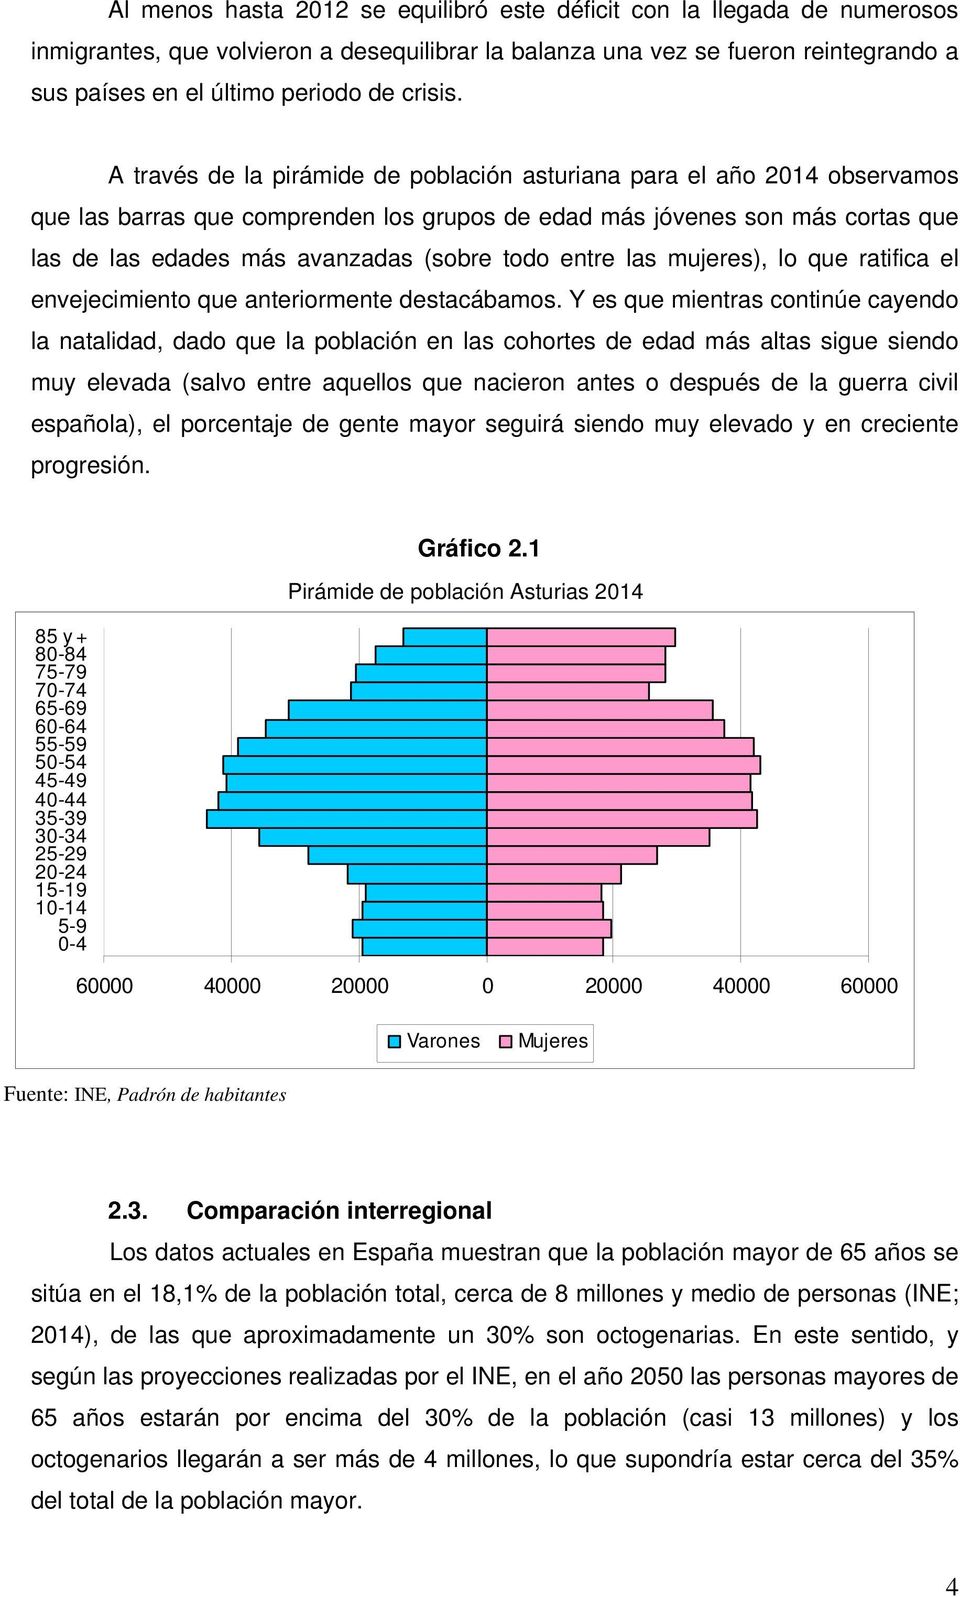 A través de la pirámide de población asturiana para el año 2014 observamos que las barras que comprenden los grupos de edad más jóvenes son más cortas que las de las edades más avanzadas (sobre todo